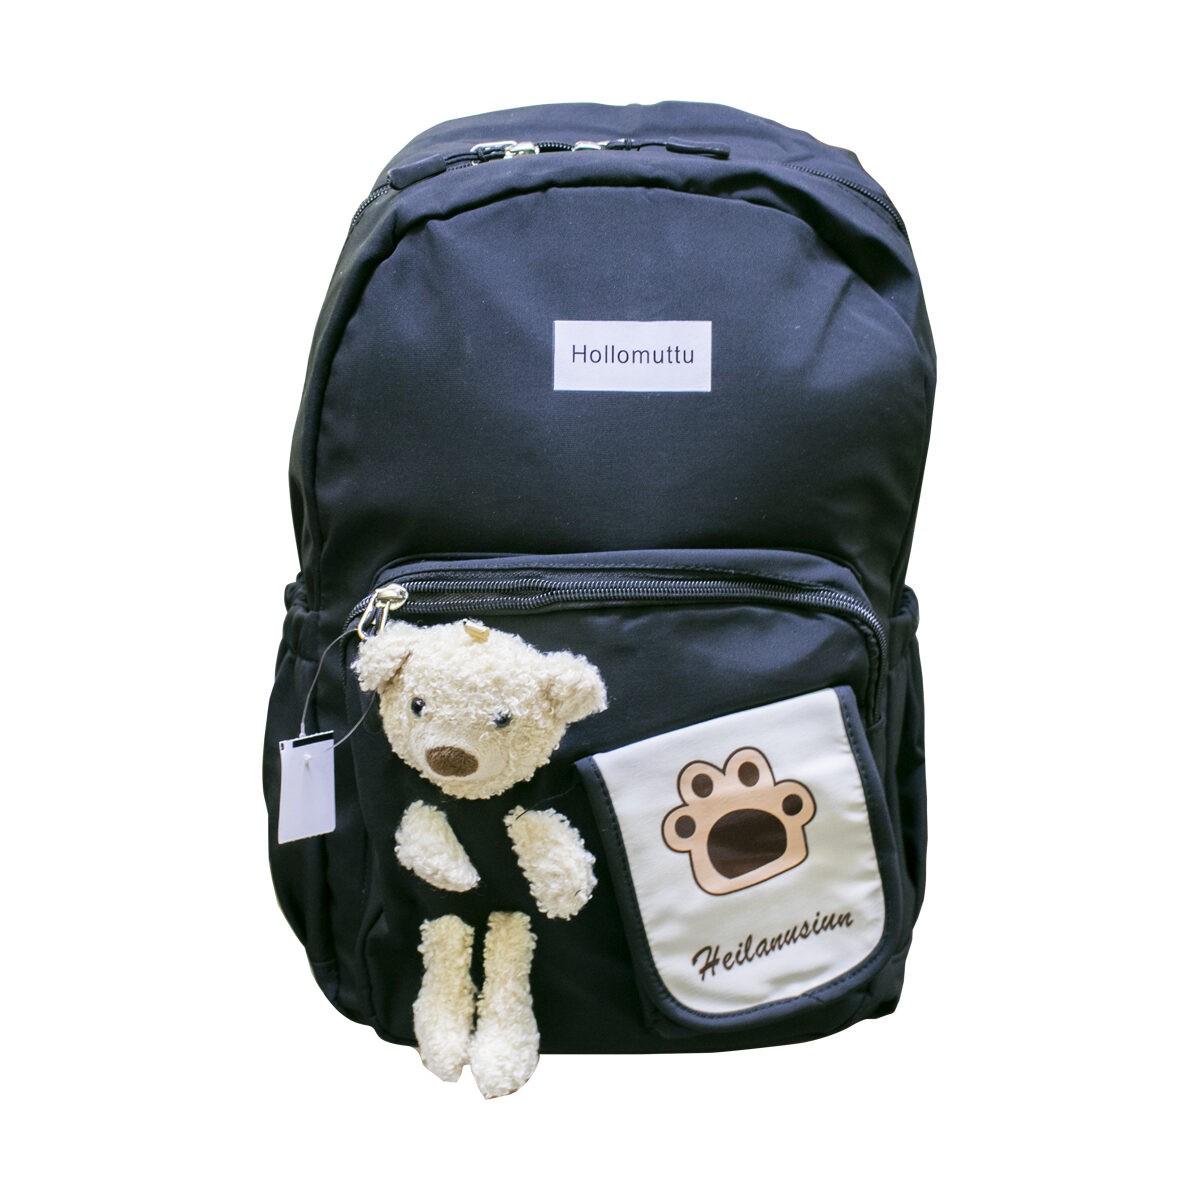 Hollomuttu Teddy Bear 1101 School Bag